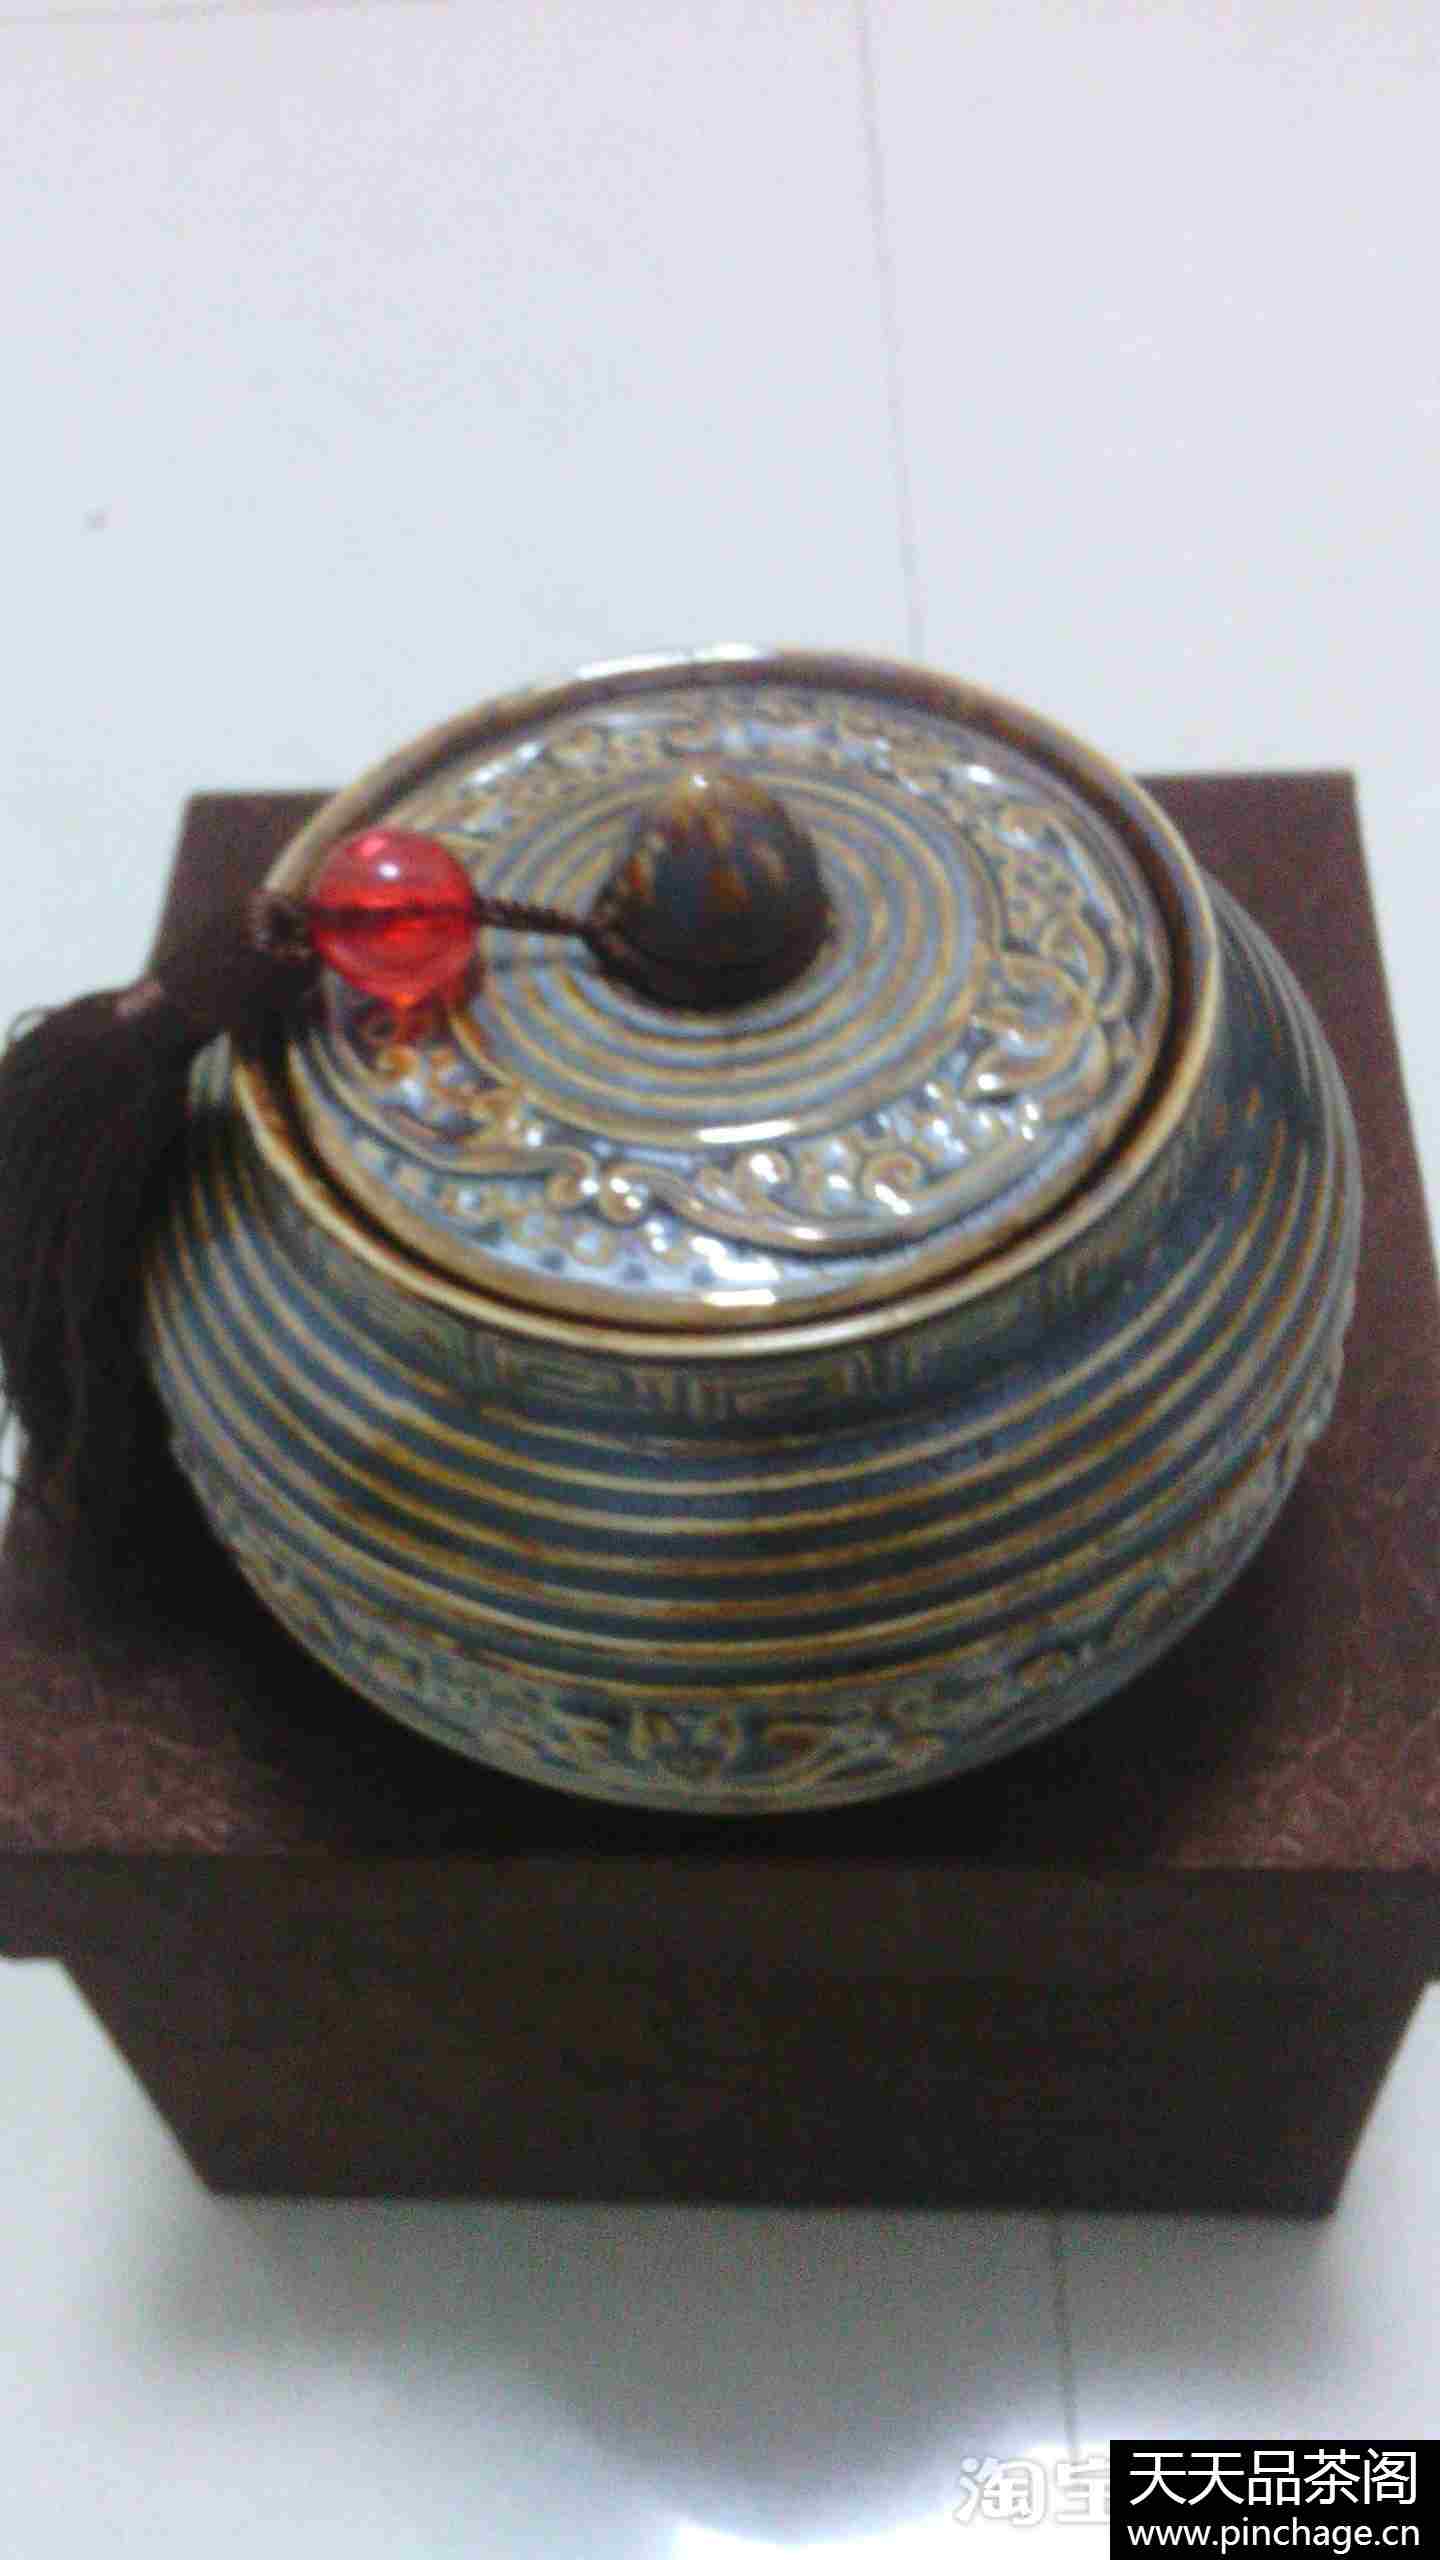 鎏金铁锈釉茶叶罐